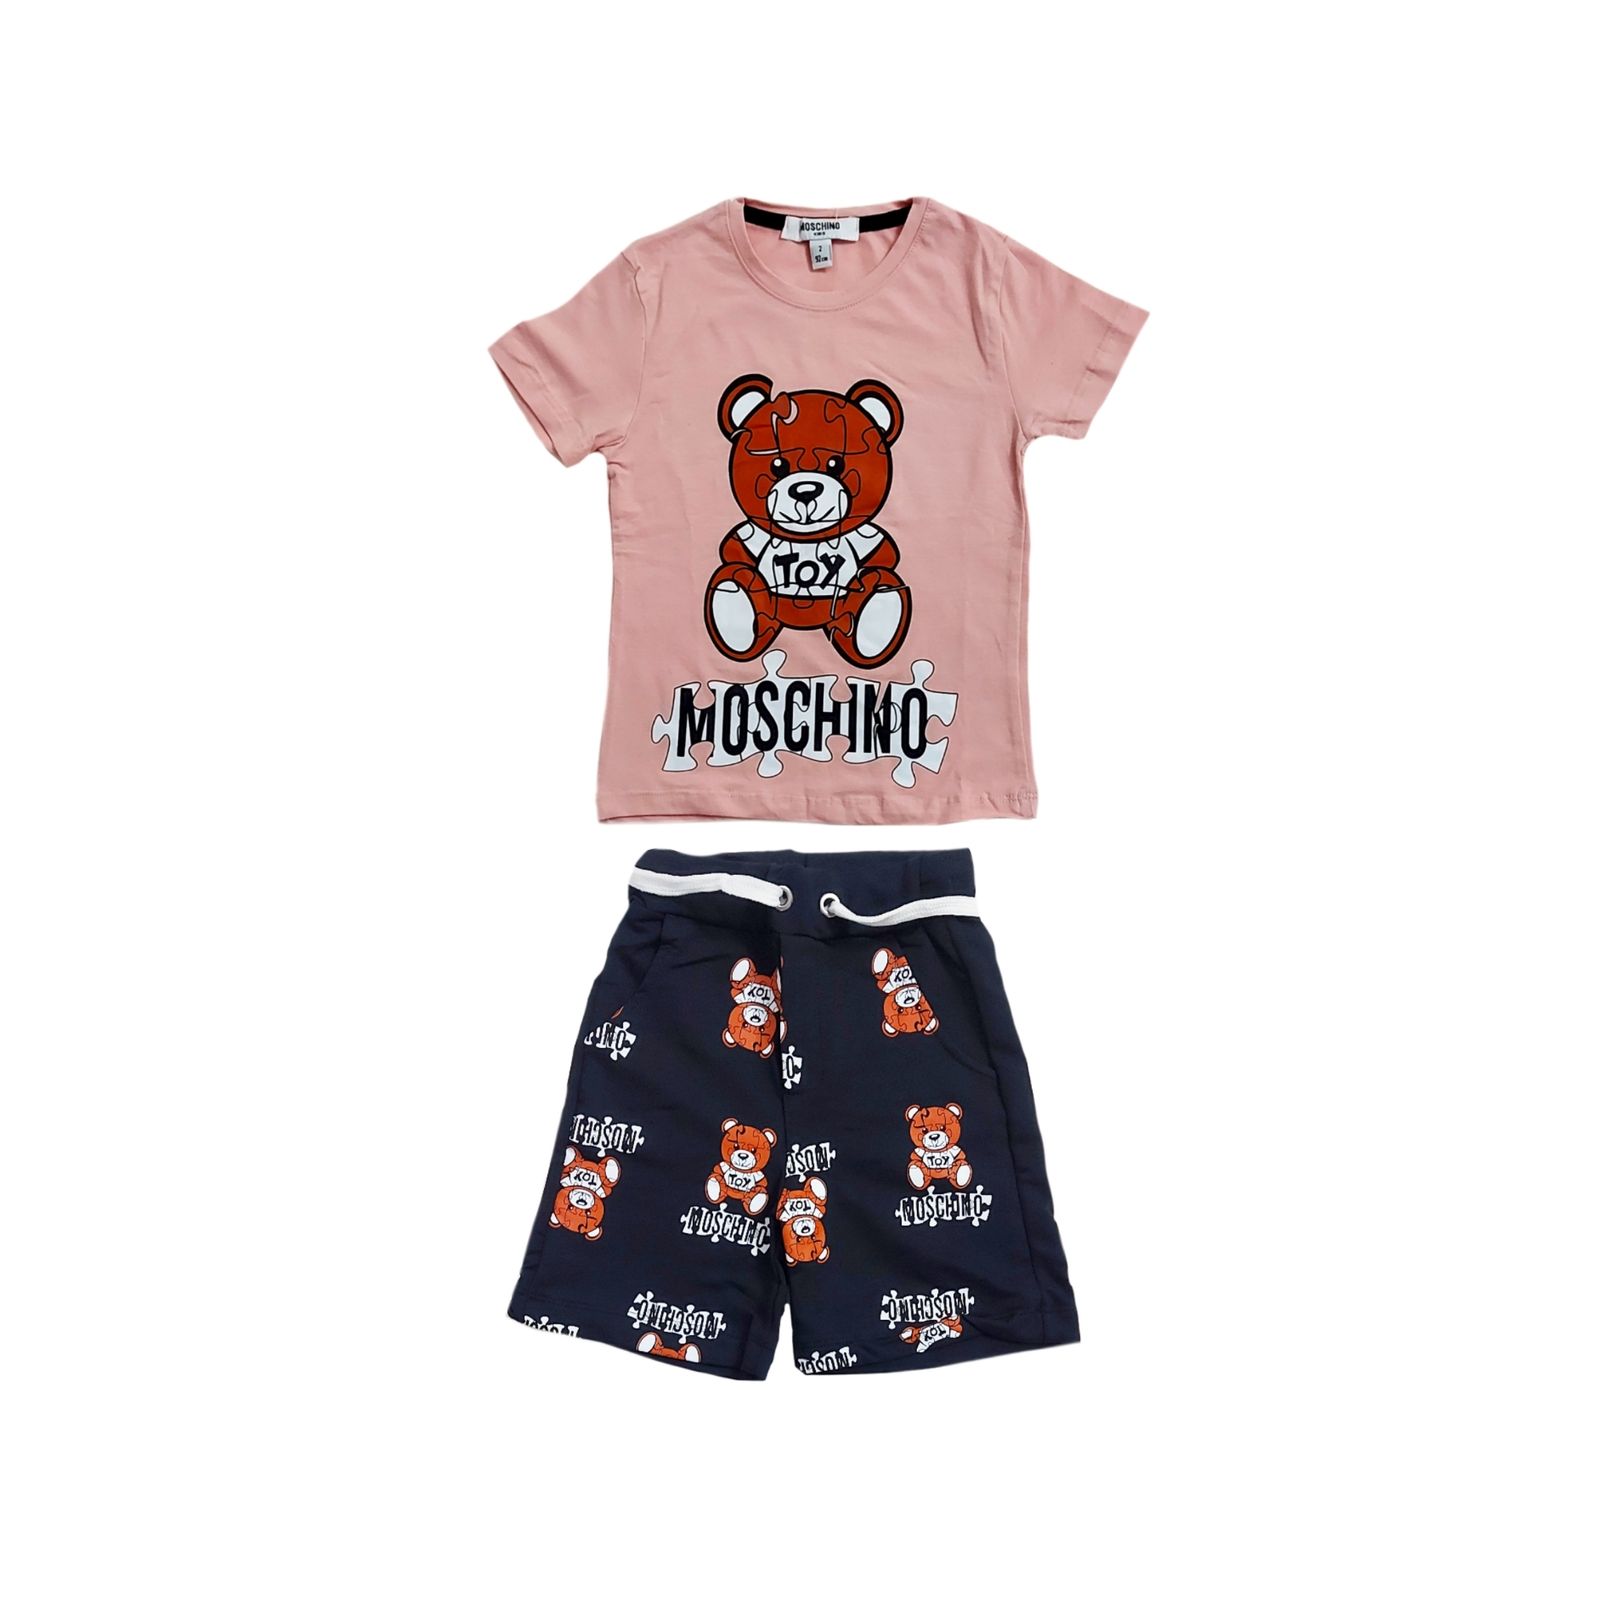 ست تی شرت و شلوارک دخترانه ماسکینو طرح خرس کد 0336 -  - 1